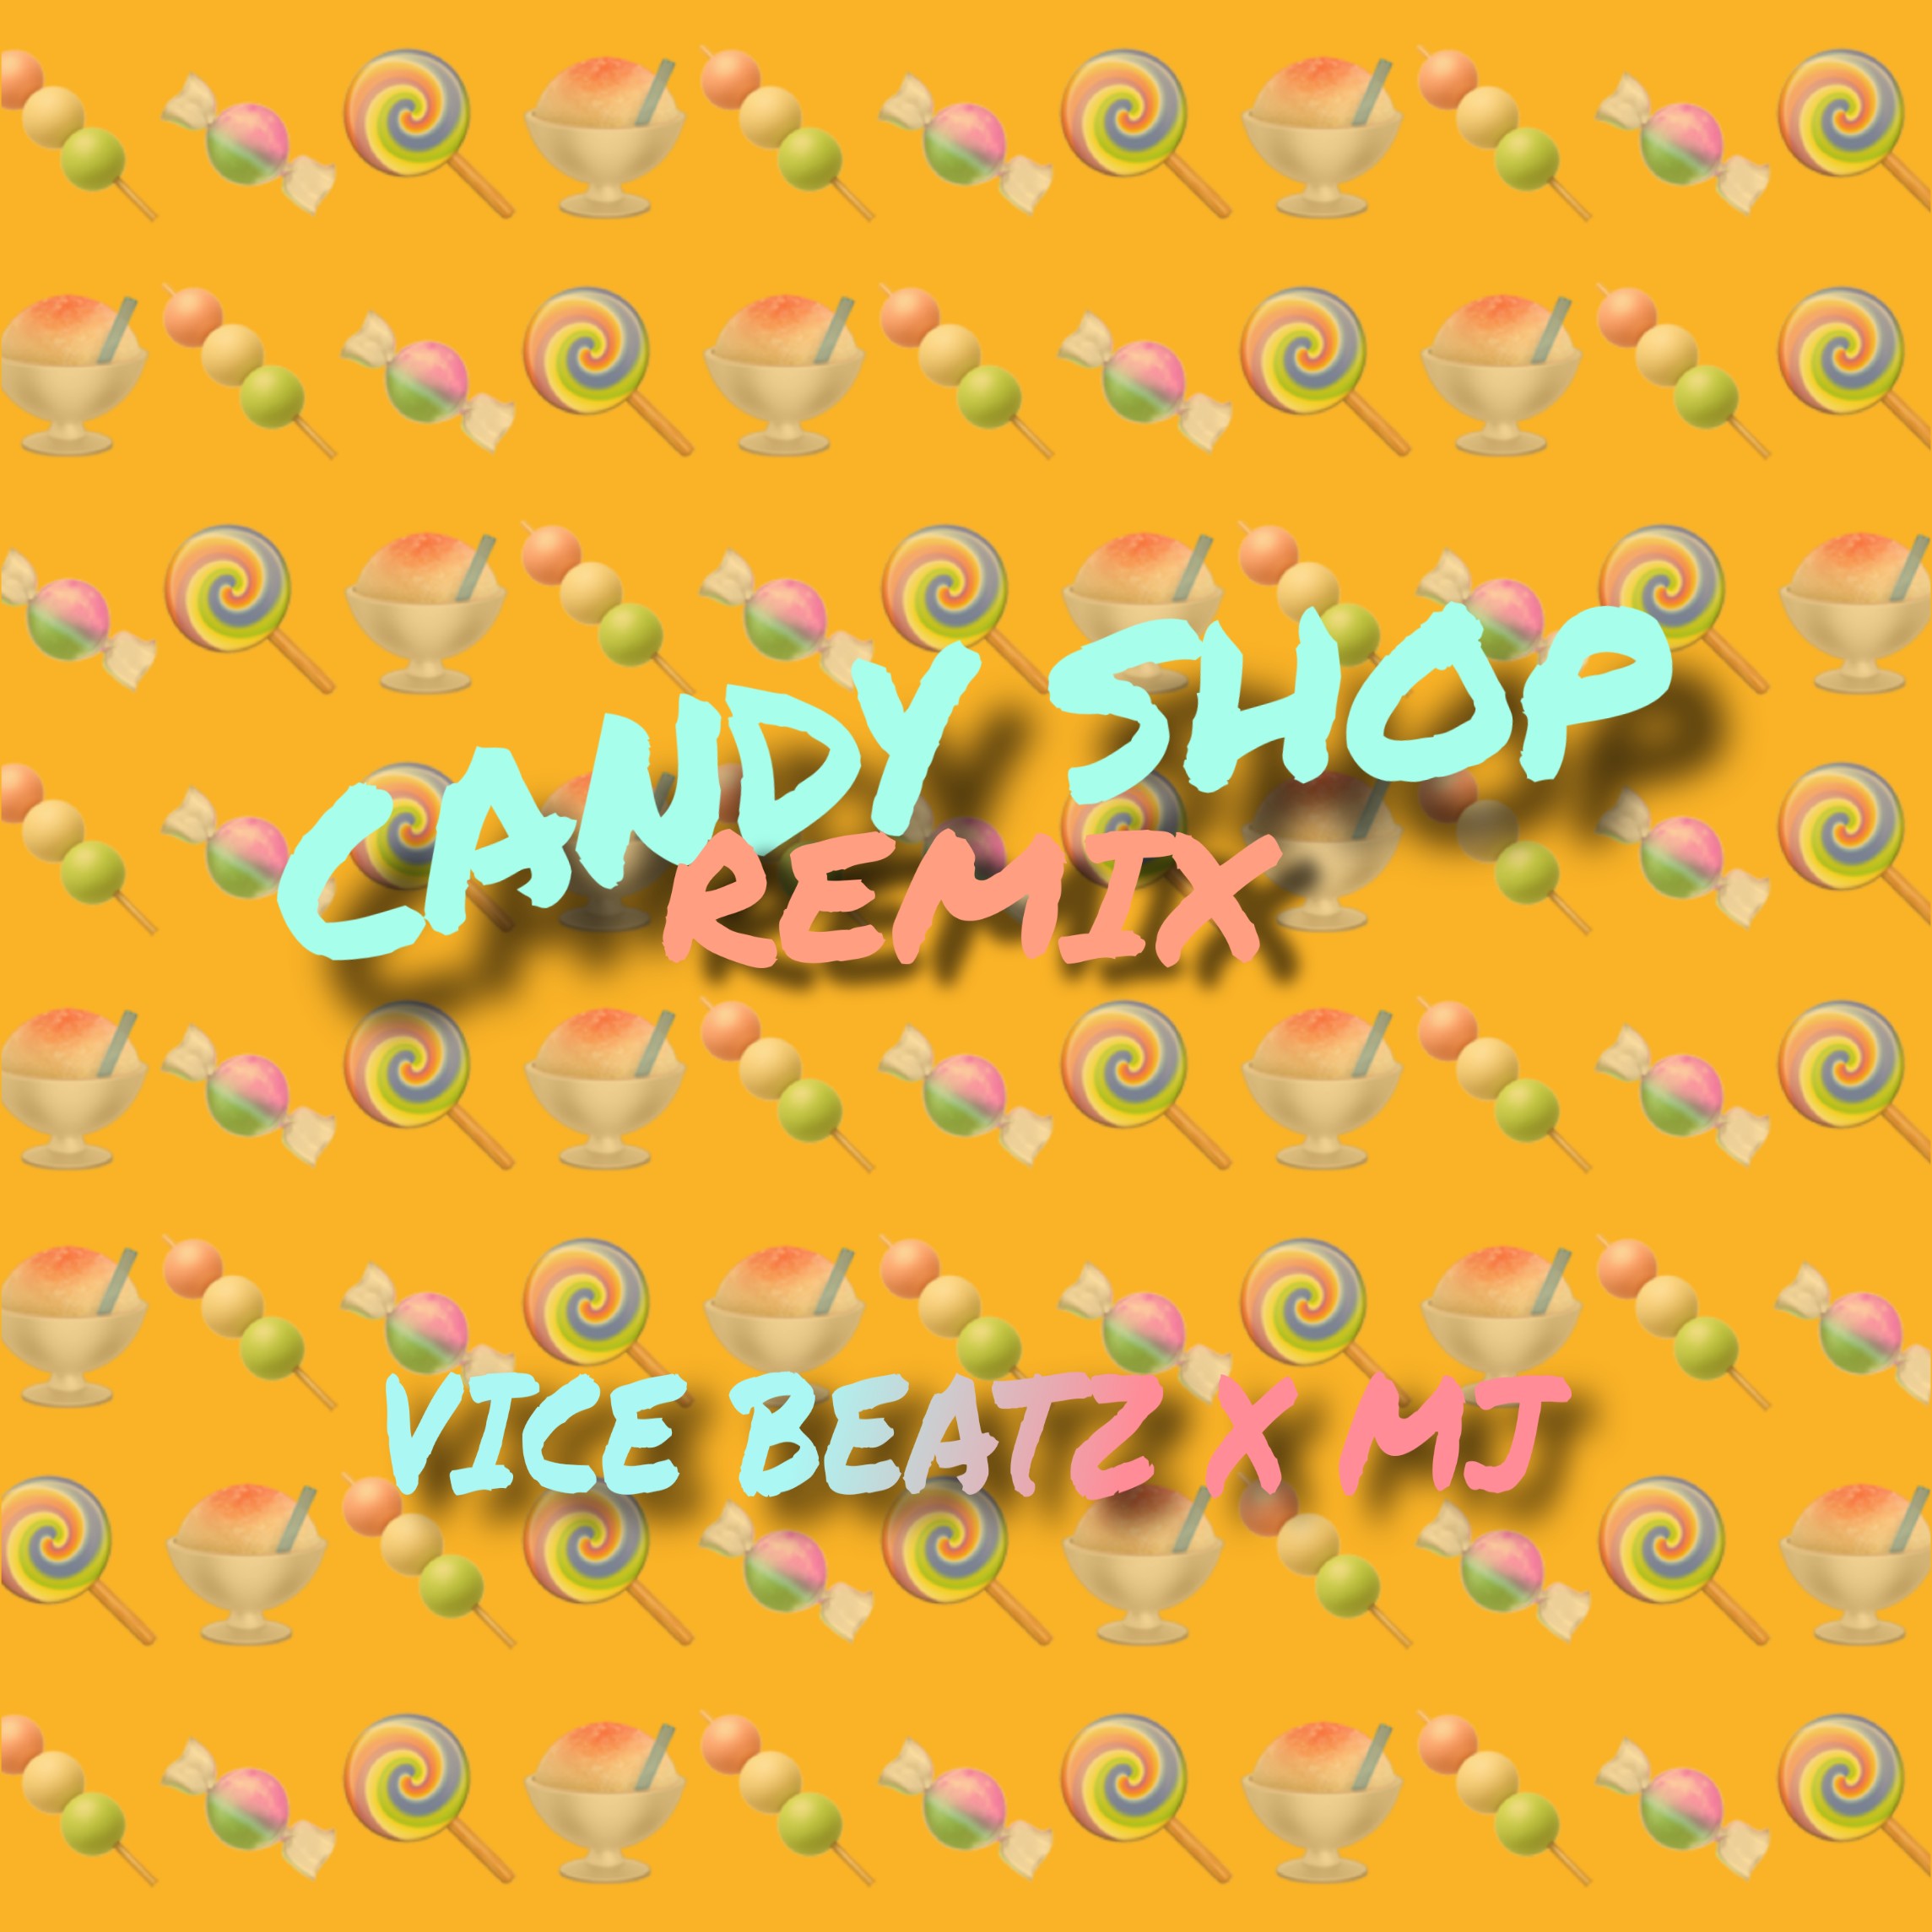 הורד Candy Shop (Vice_Beatz & MJ Remix)_ CLICK ON 'BUY' For Free Download